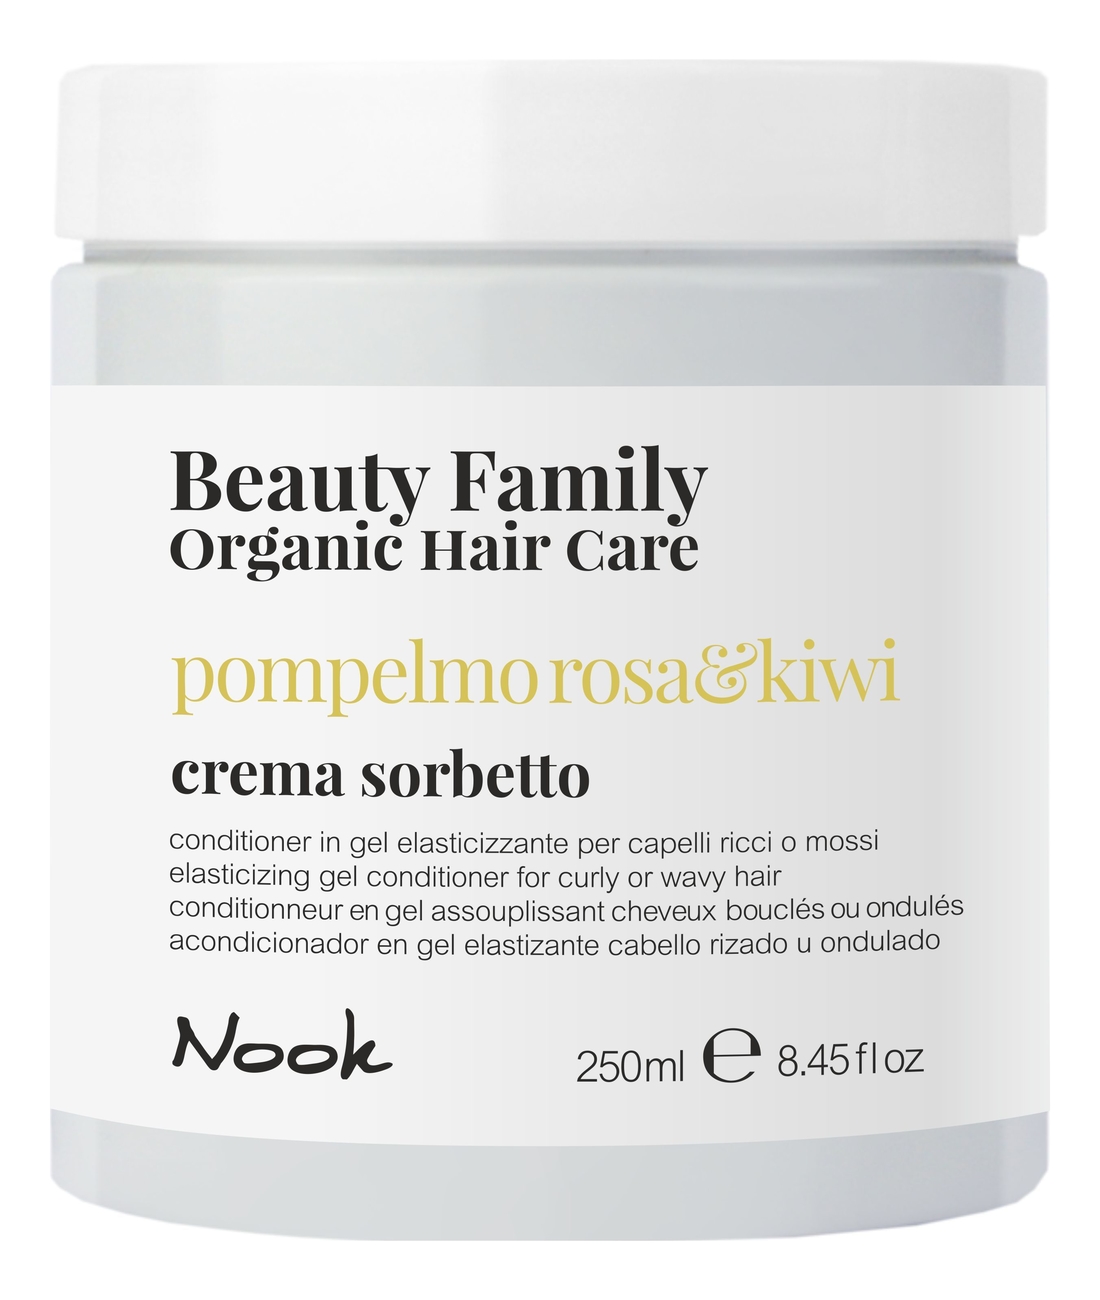 Восстанавливающий гель-кондиционер для кудрявых или волнистых волос Beauty Family Crema Sorbetto Pompelmo Rosa  Kiwi: Гель-кондиционер 250мл